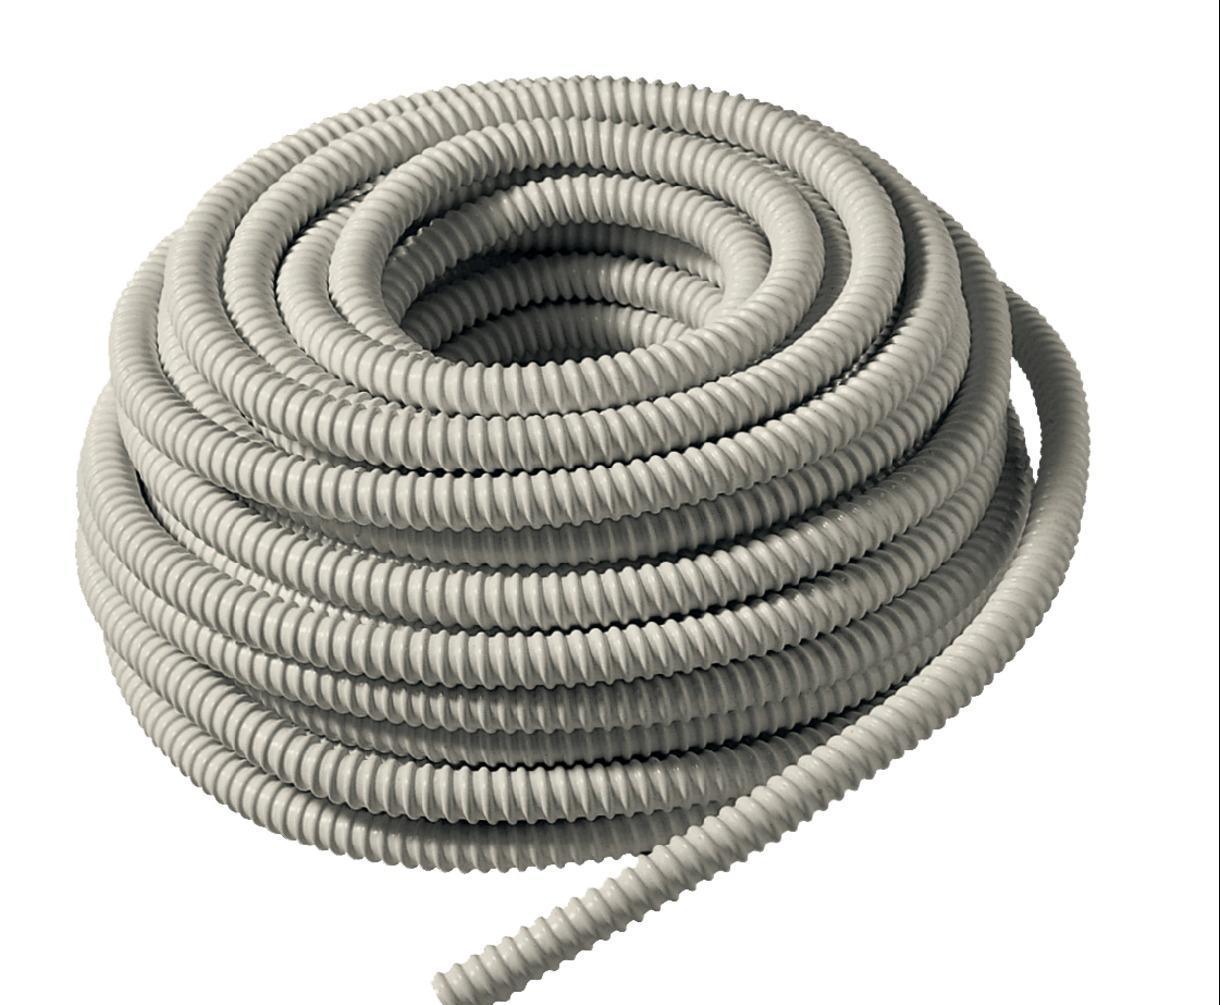 Condensate hose 0020TU 20mm corrugated (per meter)